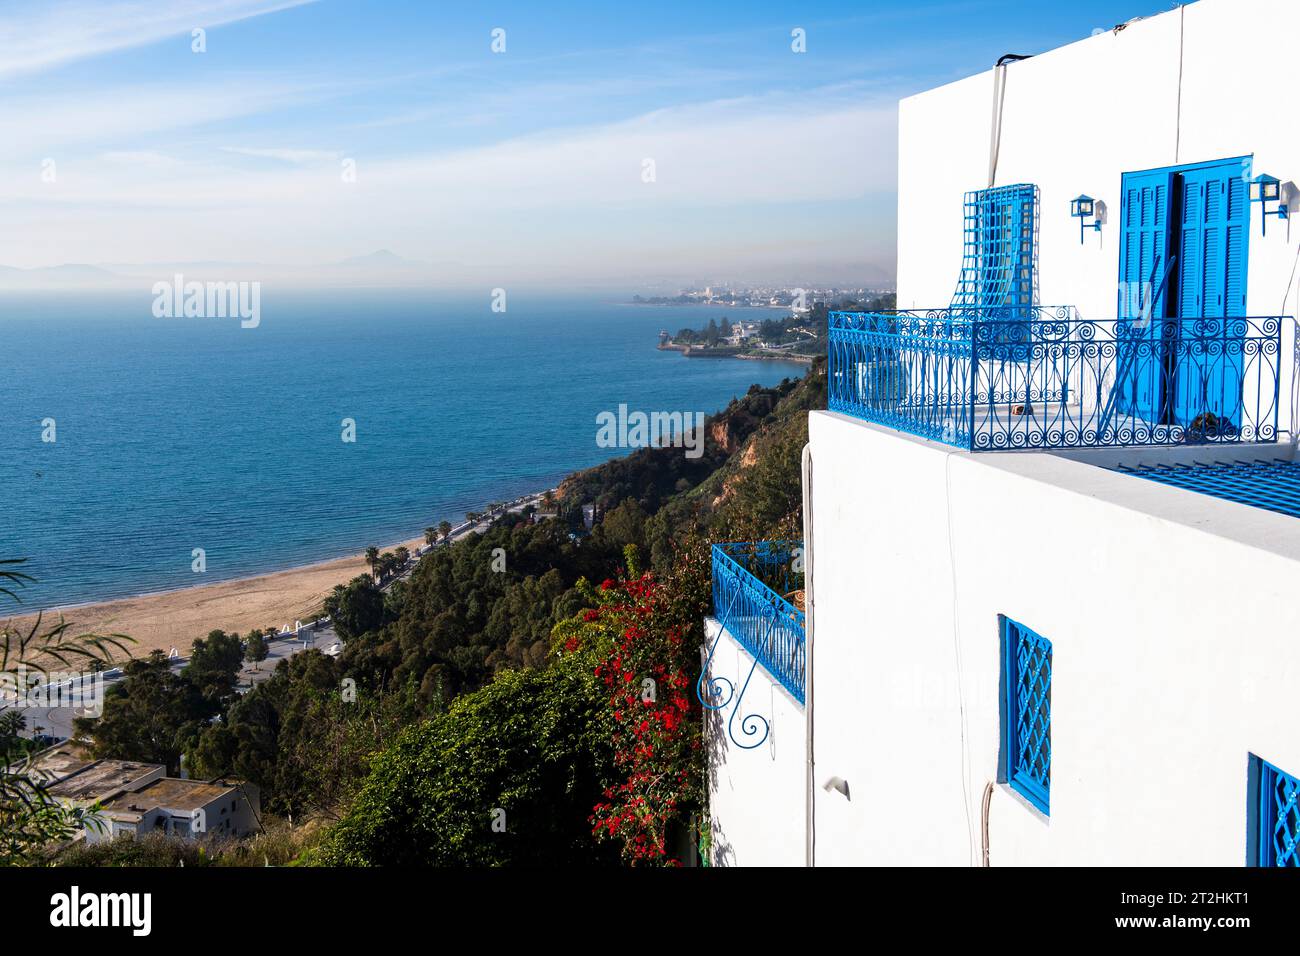 Sidi Bou Said, Tunisie, Afrique. Une charmante ville surplombant la Méditerranée. Banque D'Images